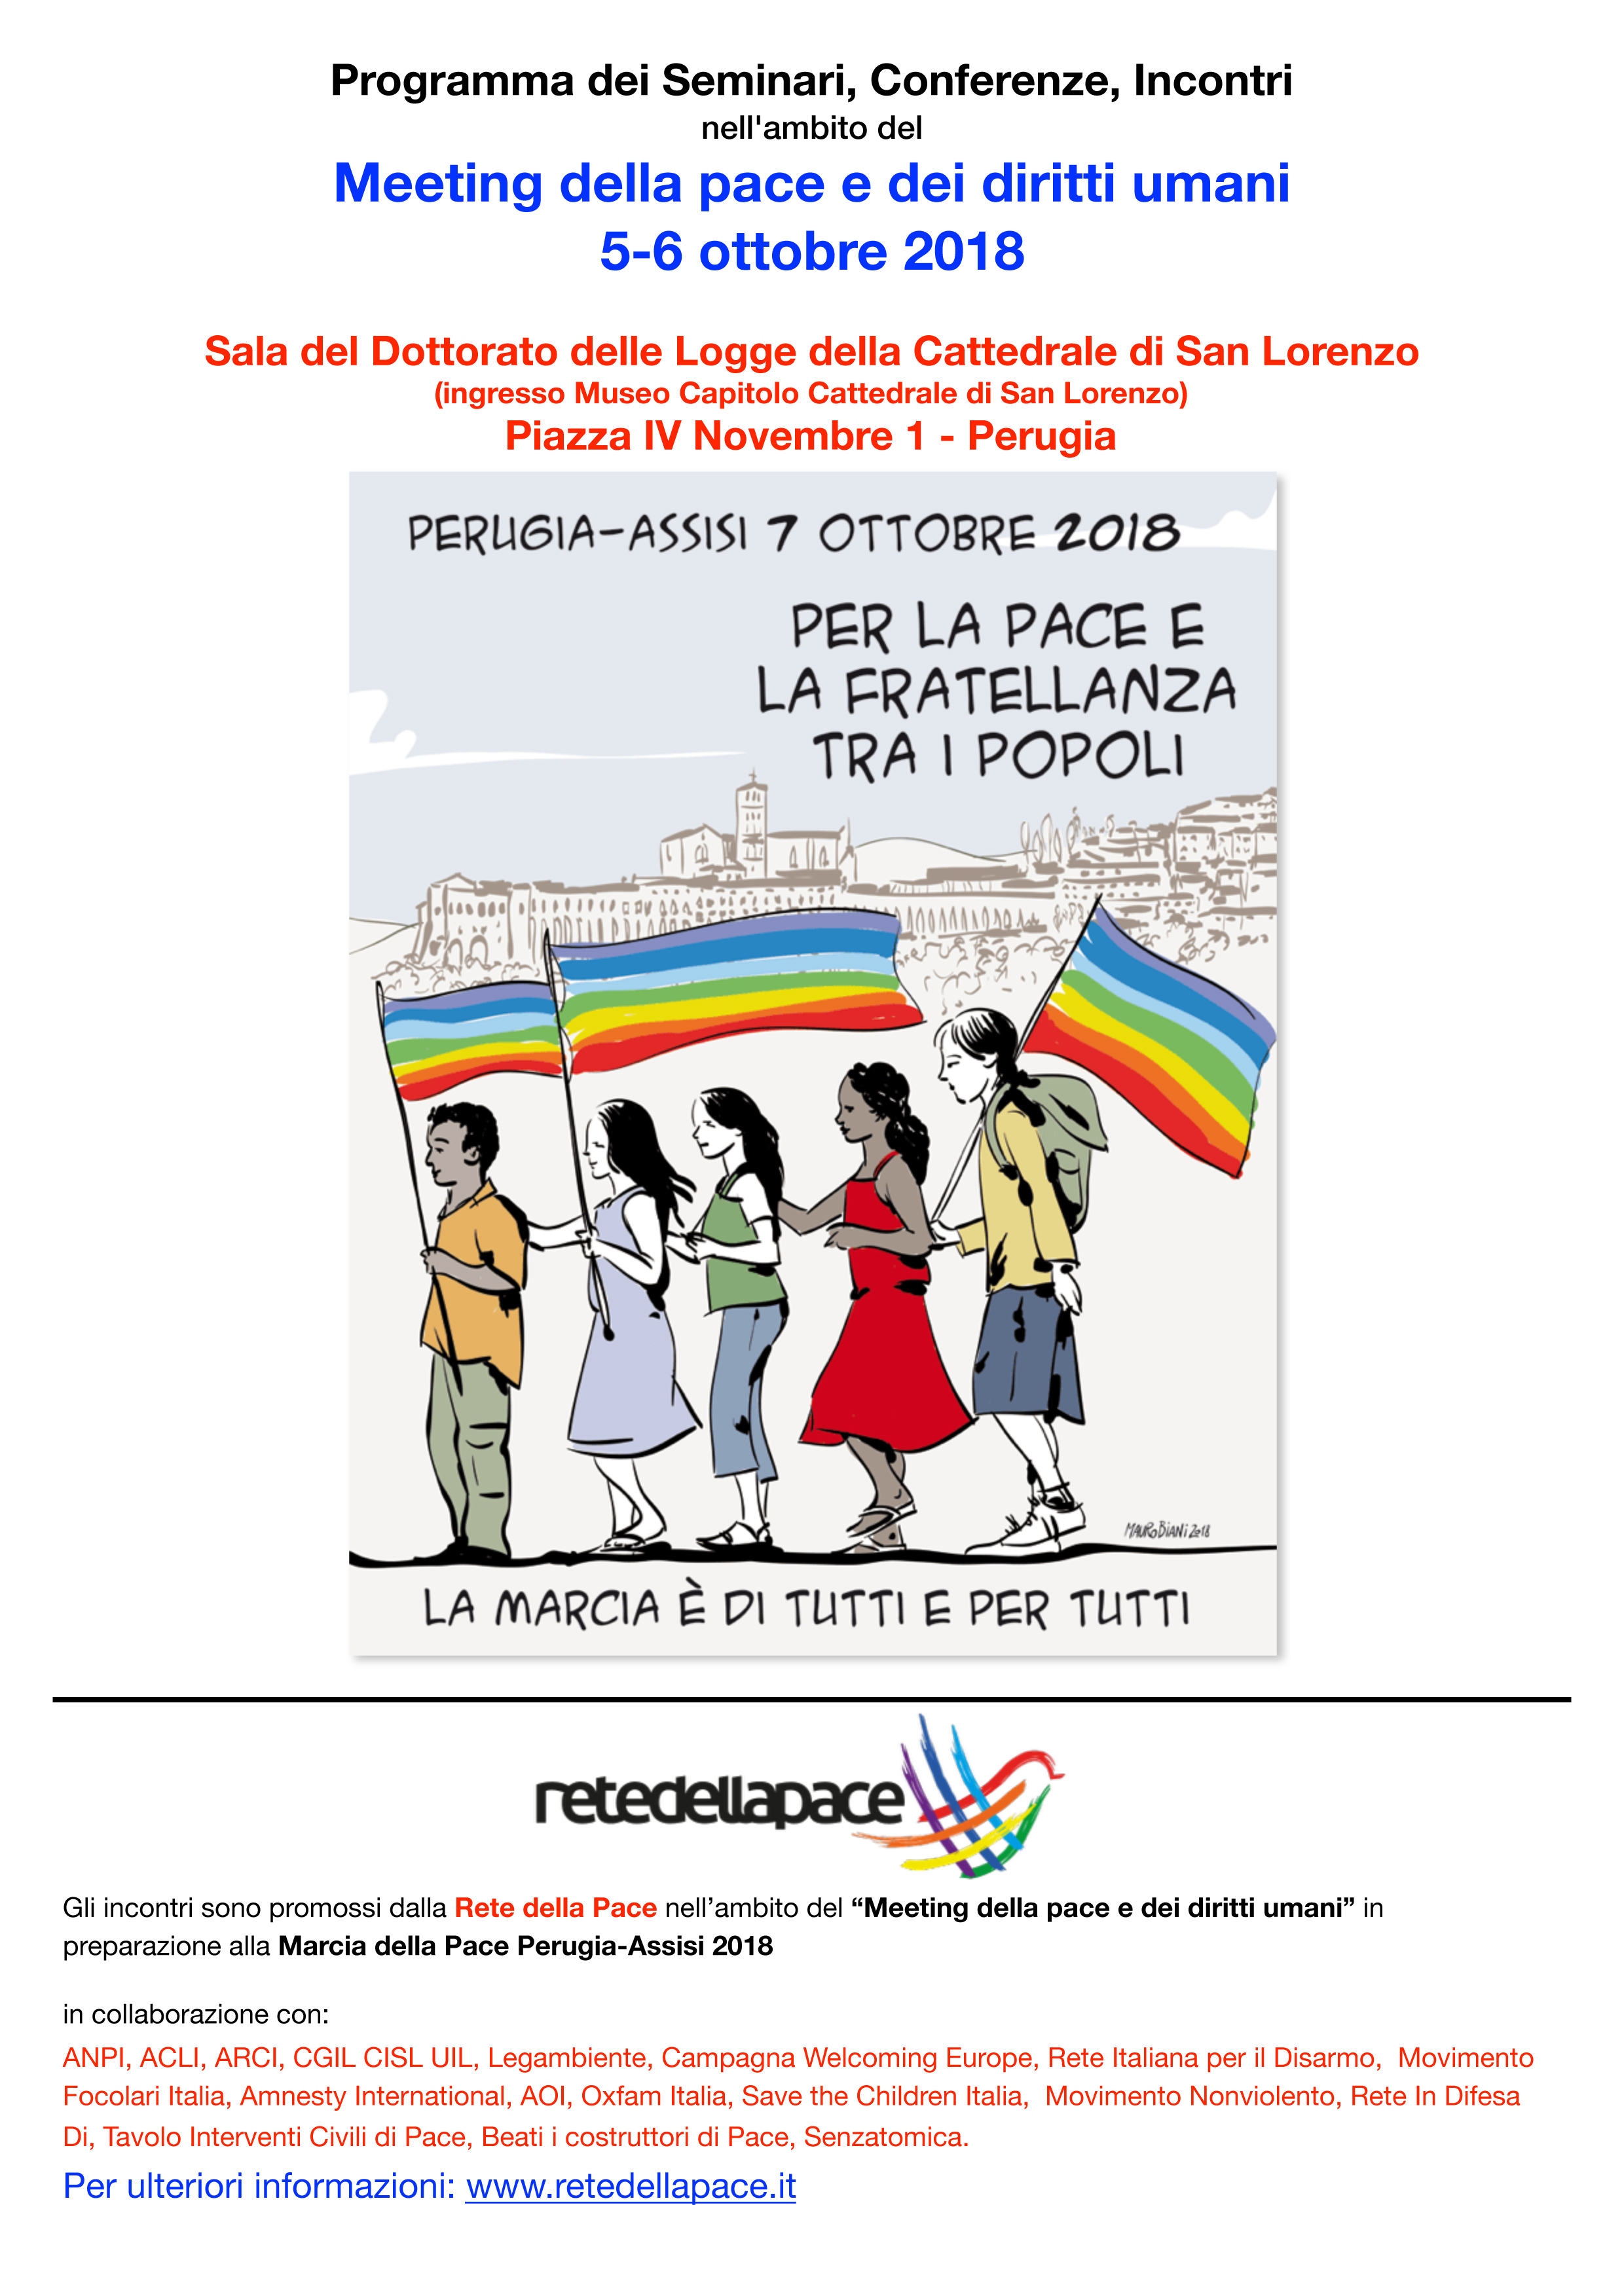 Perugia 5-6 ottobre: Meeting della pace e dei diritti umani